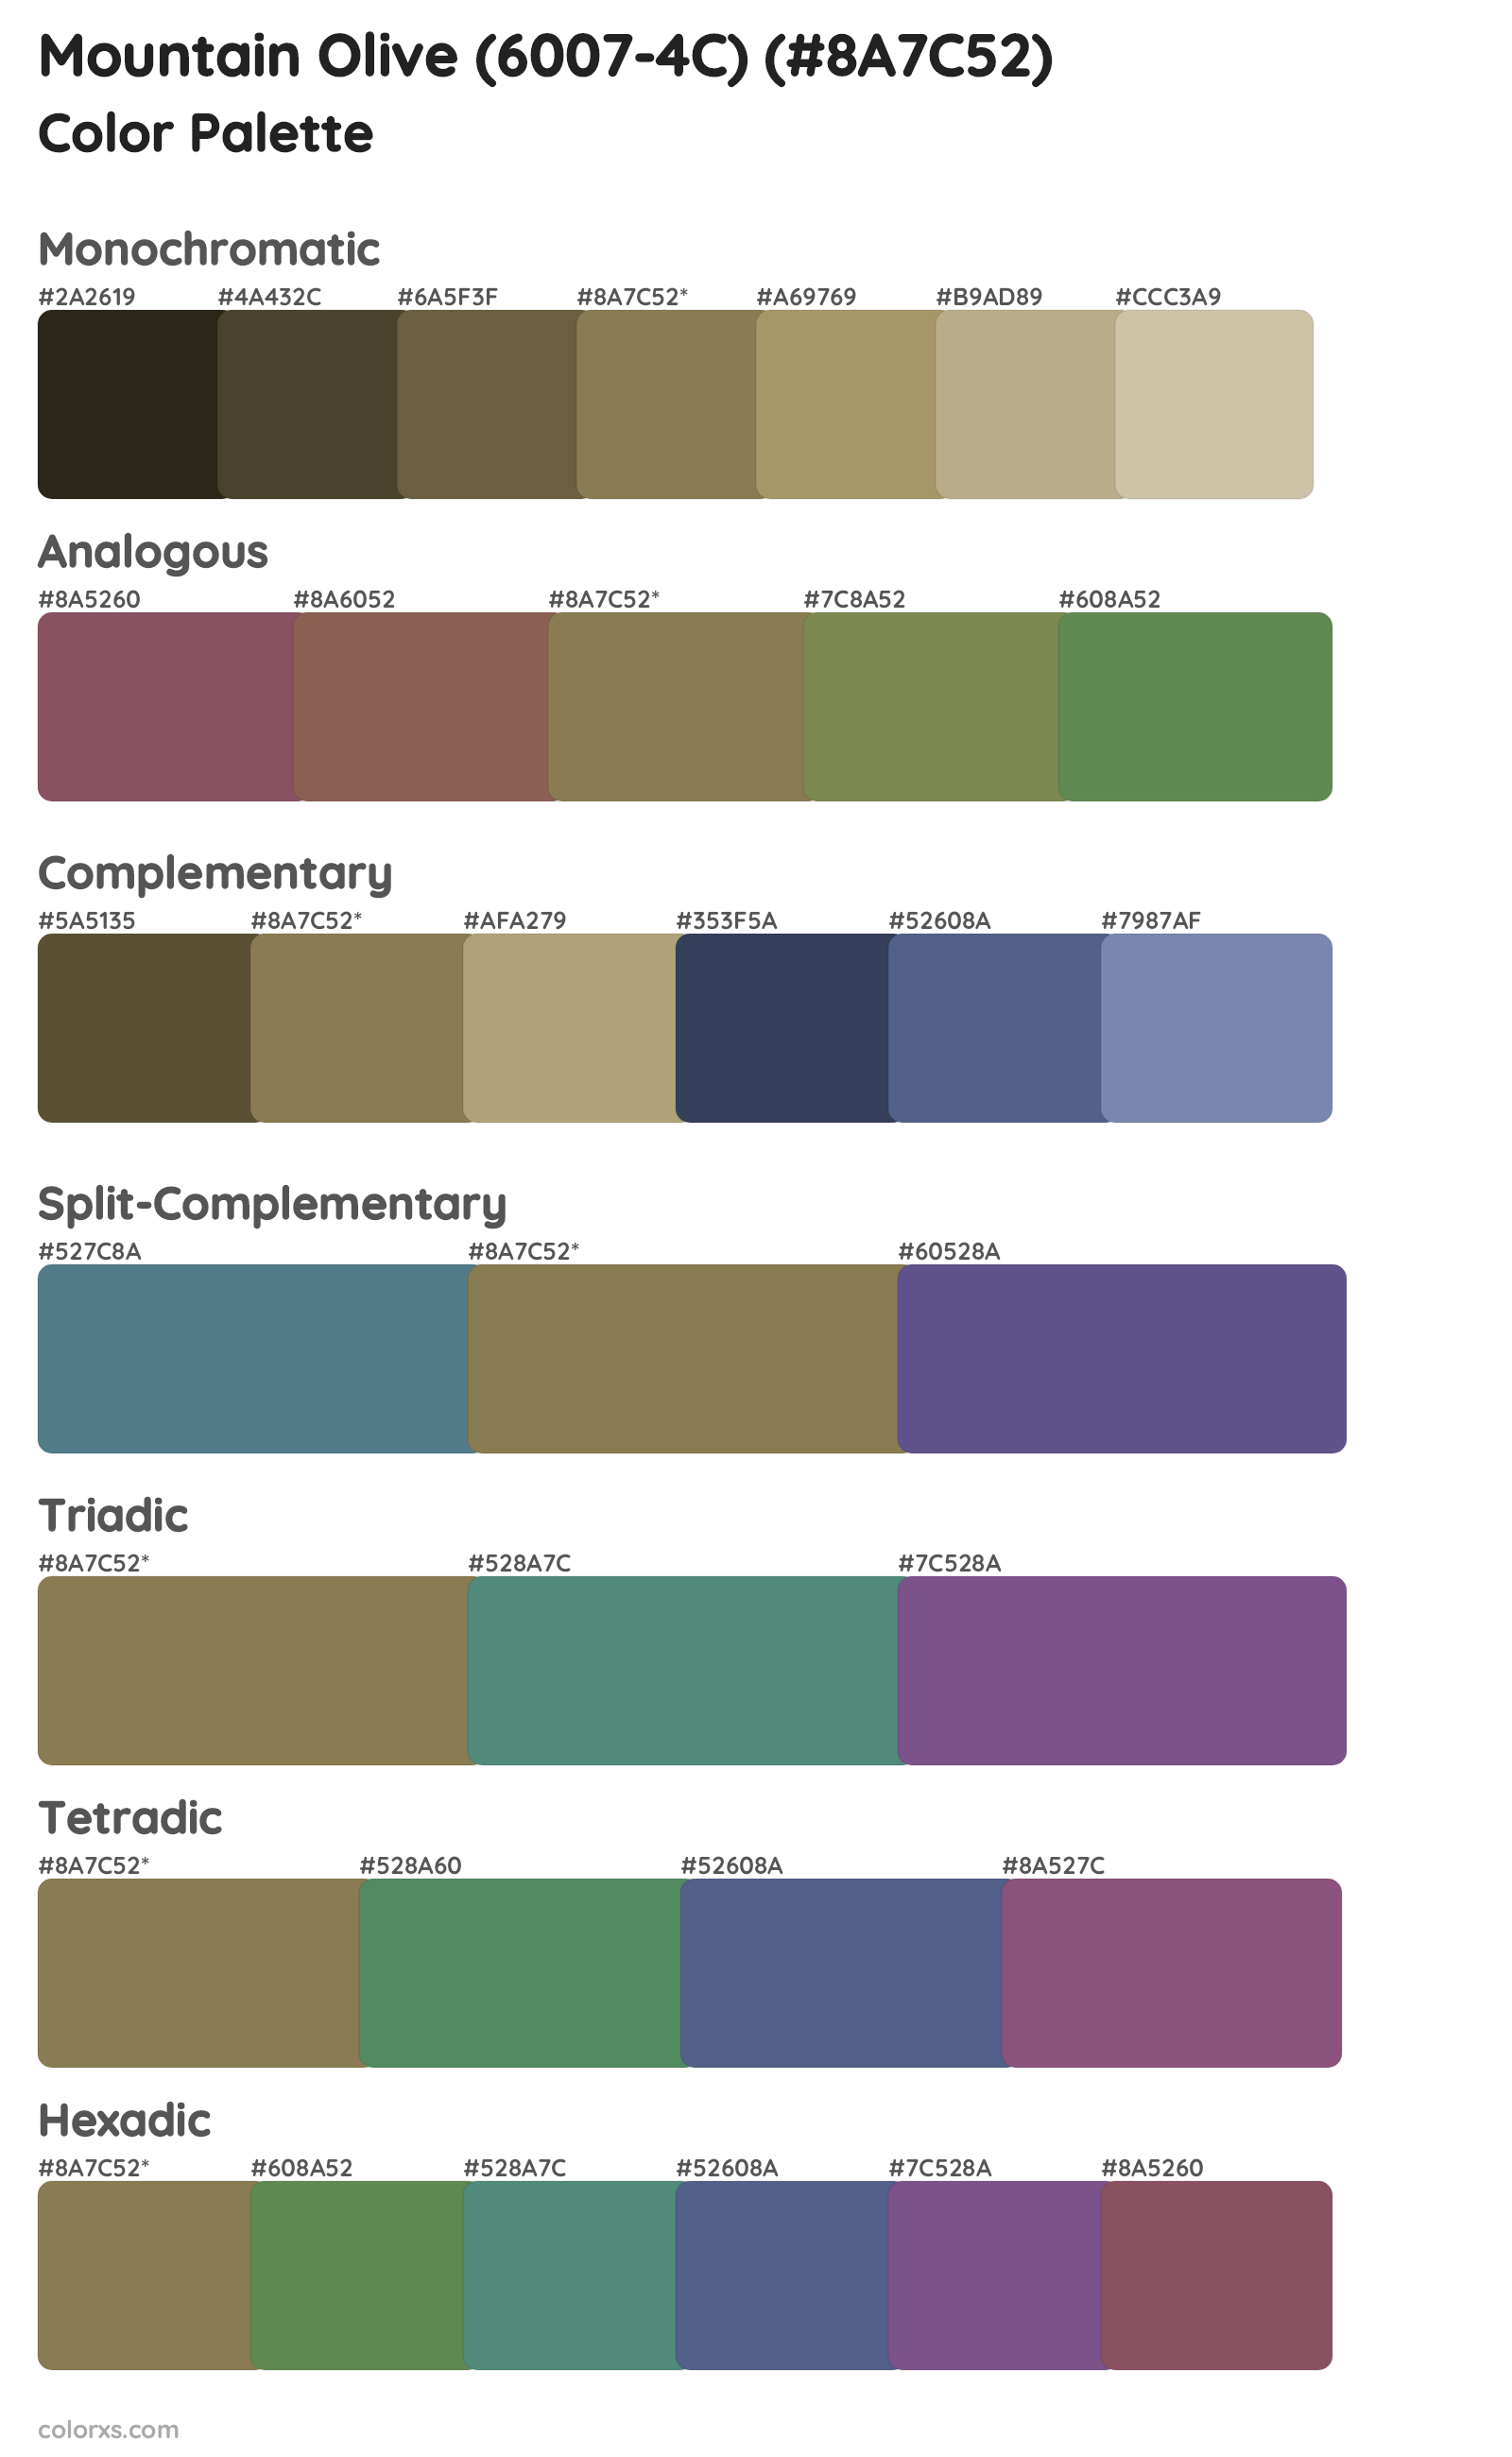 Mountain Olive (6007-4C) Color Scheme Palettes